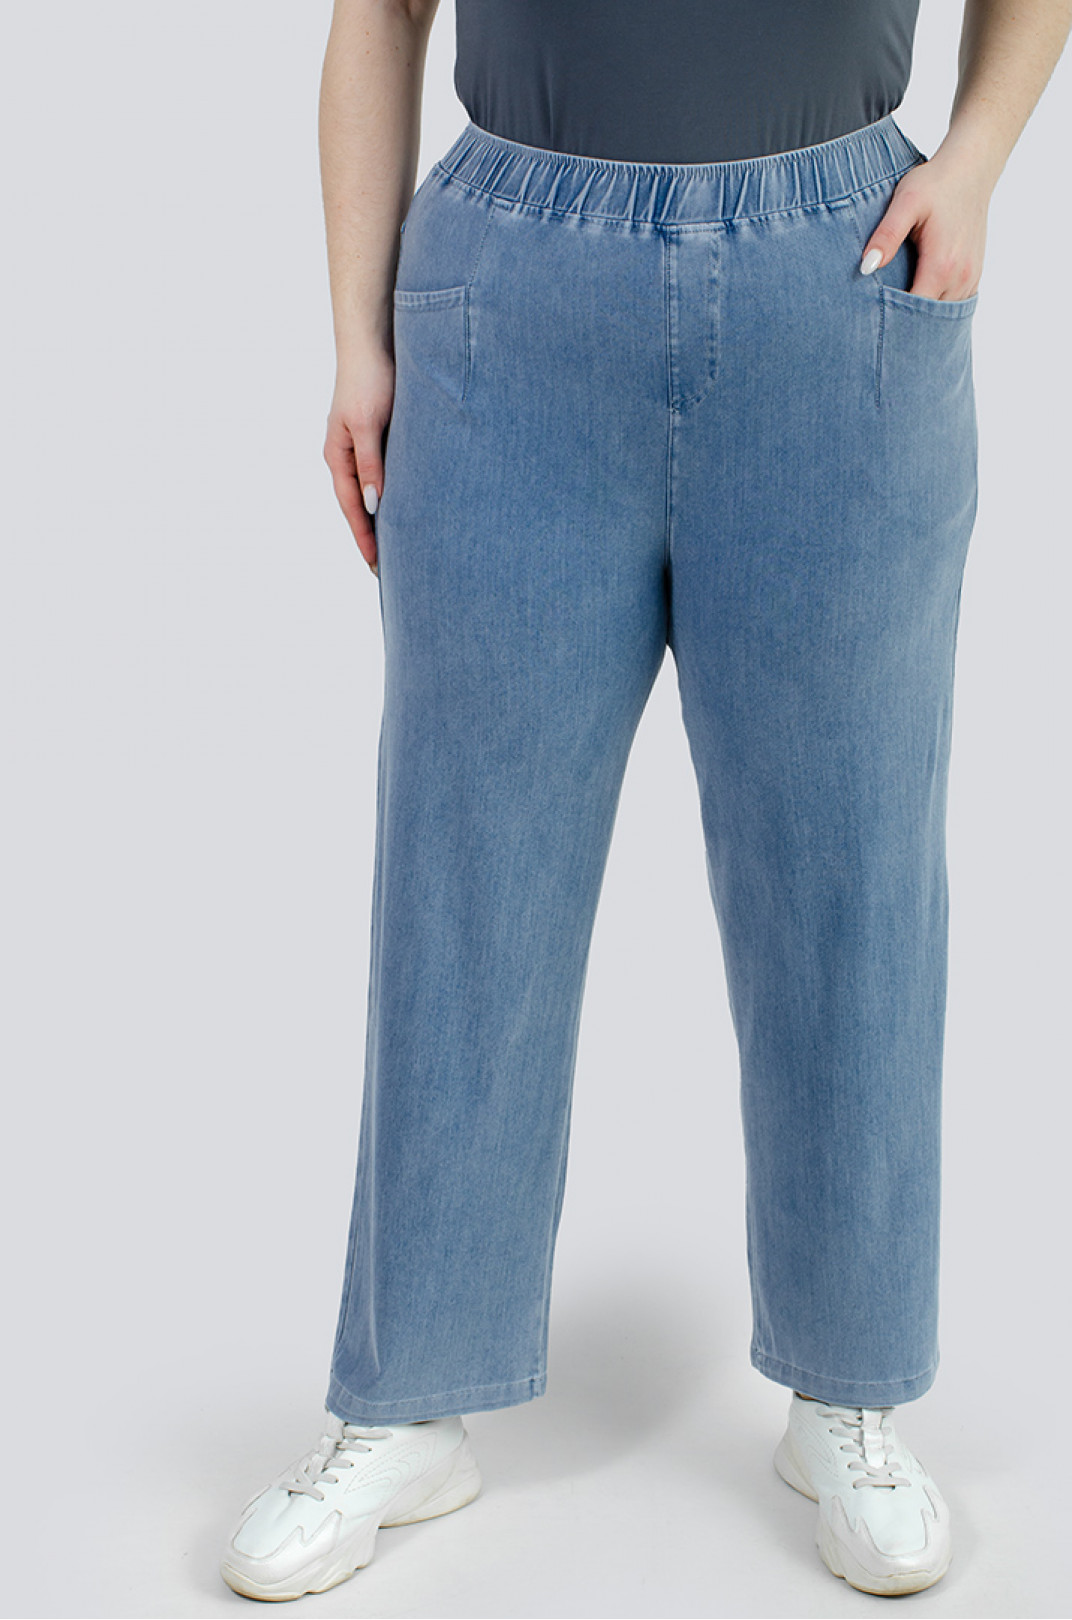 Стильные джинсы больших размеров